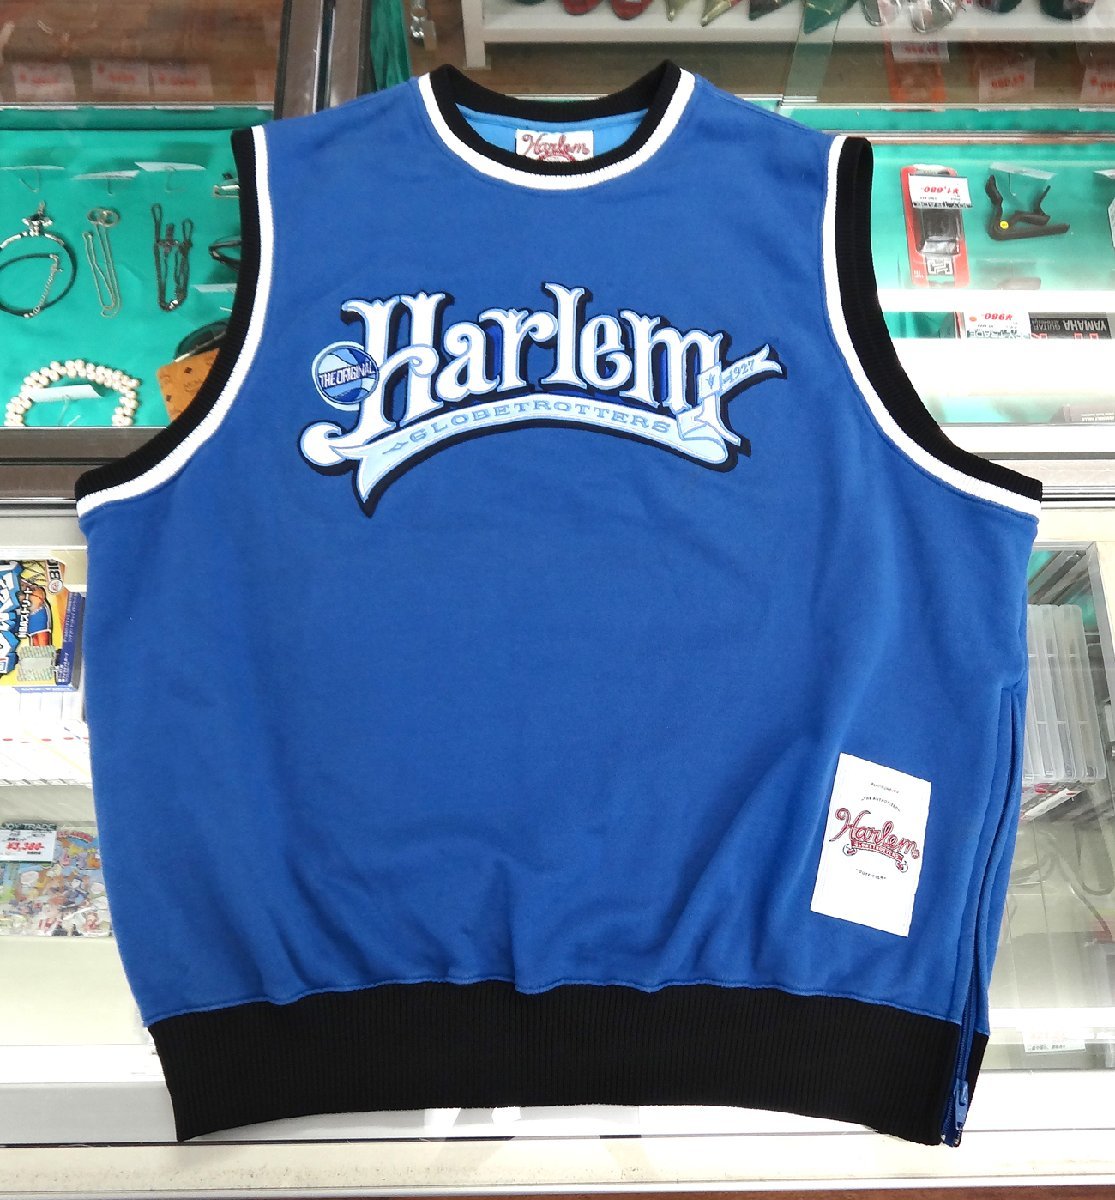 中古 PLATINUM FUBU/プラチナム フブ Harlem globetrotters ハーレムグローブトロッターズ ゲームシャツ ブルー サイズXL バスケ ジャージの画像1